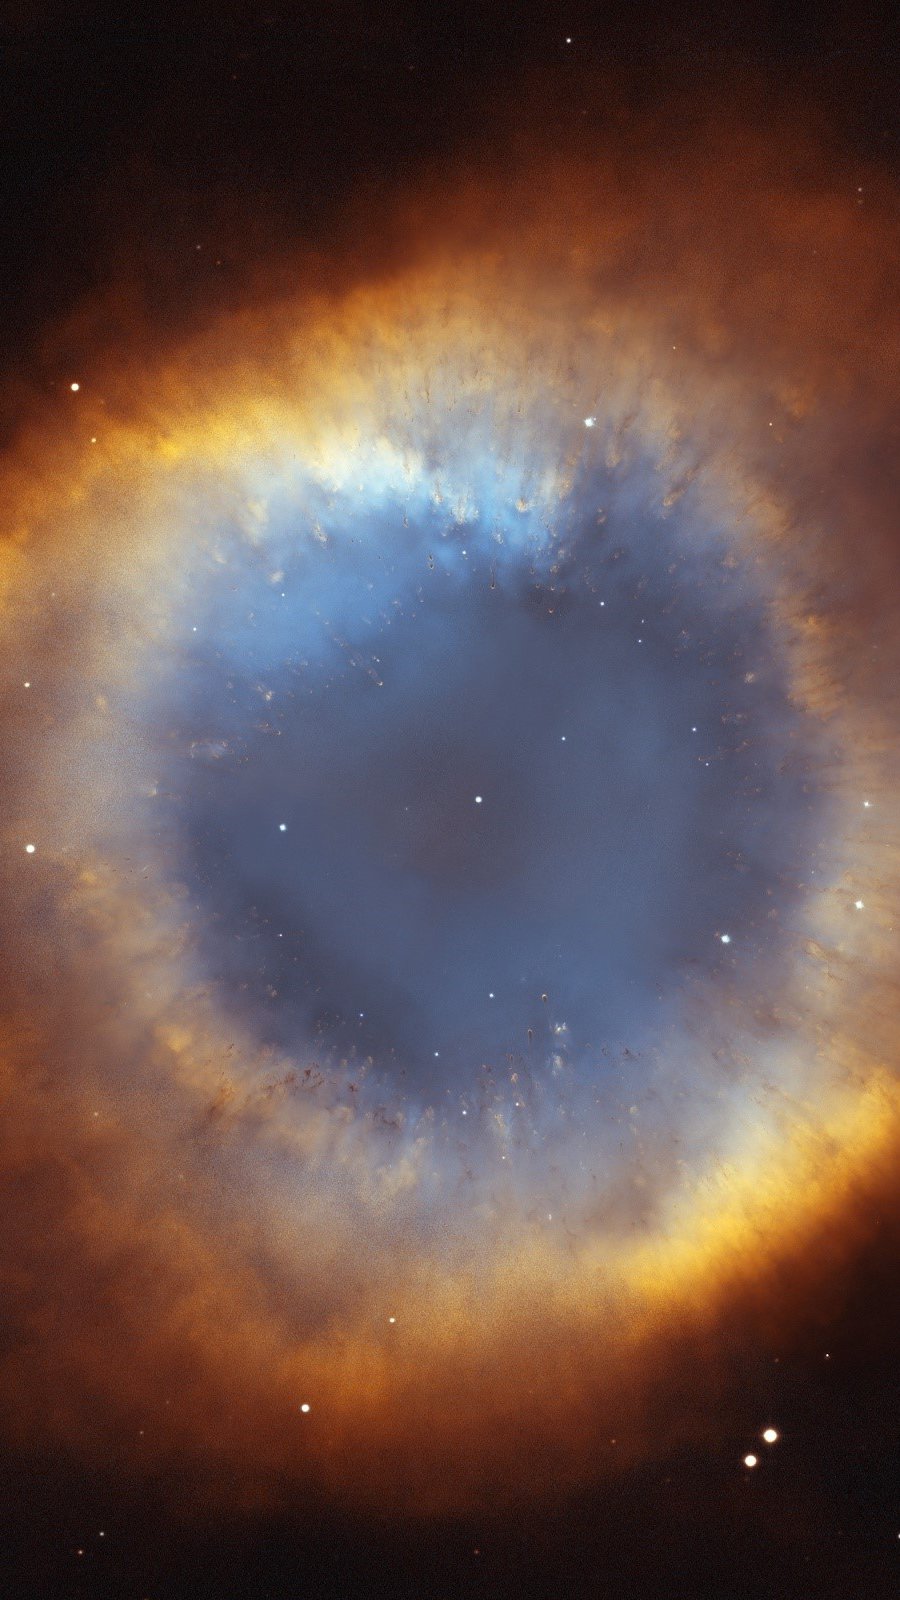 Fondos de pantalla Nebula del espacio Vertical